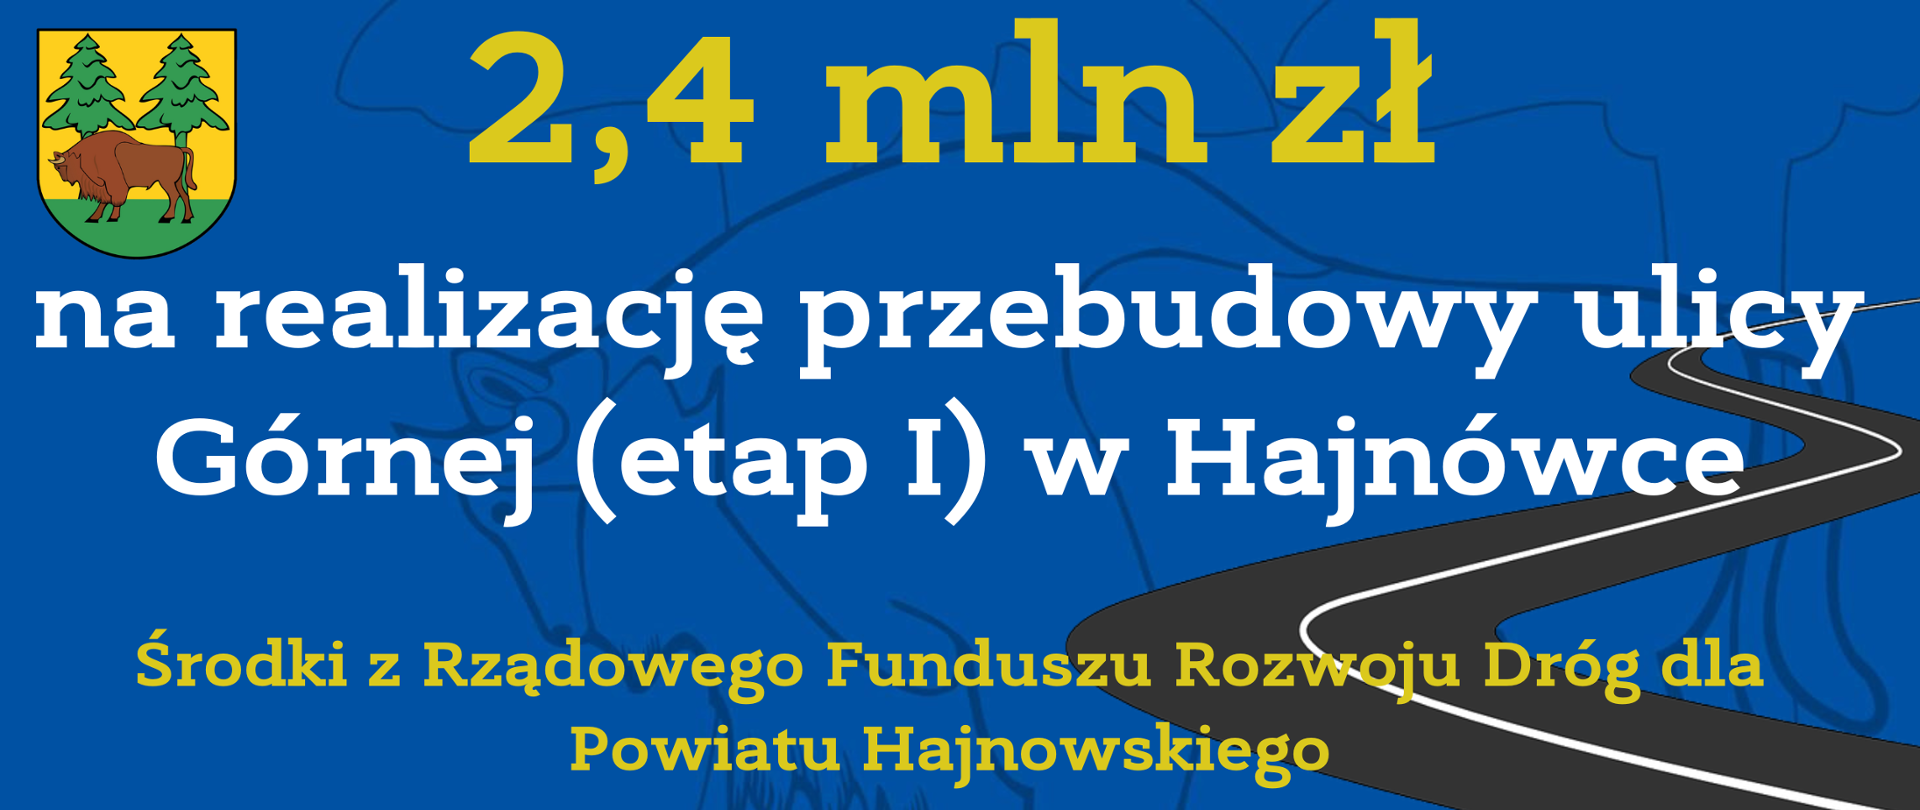 2,4 mln zł na realizację przebudowa ulicy Górnej (etap I) w Hajnówce Środki z Rządowego Funduszu Rozwoju Dróg dla Powiatu Hajnowskiego